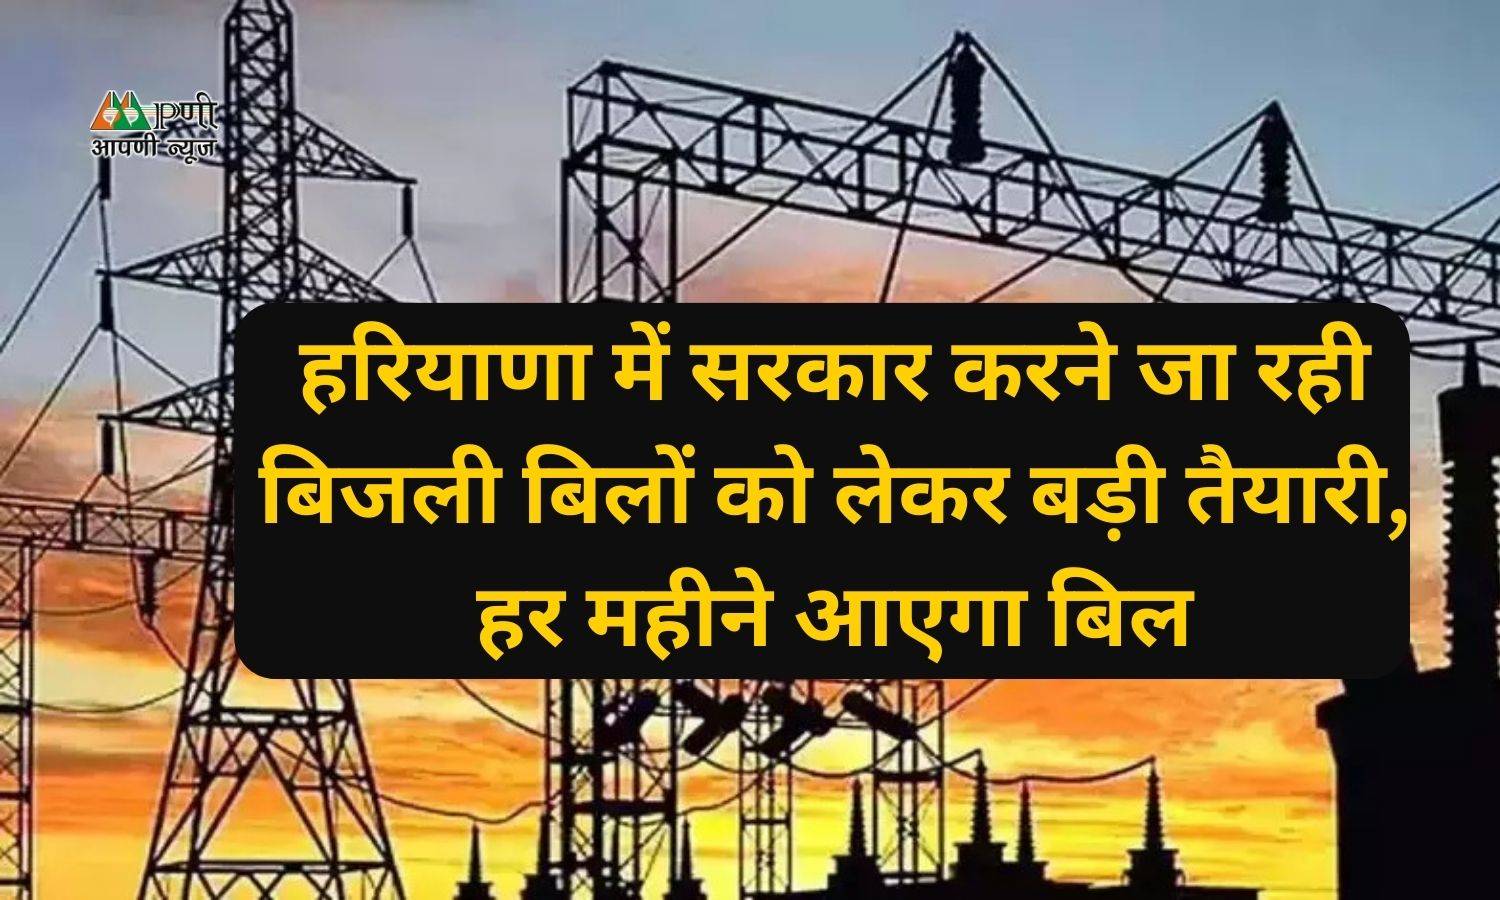 Haryana Electricity Bills: हरियाणा में सरकार करने जा रही बिजली बिलों को लेकर बड़ी तैयारी, हर महीने आएगा बिल